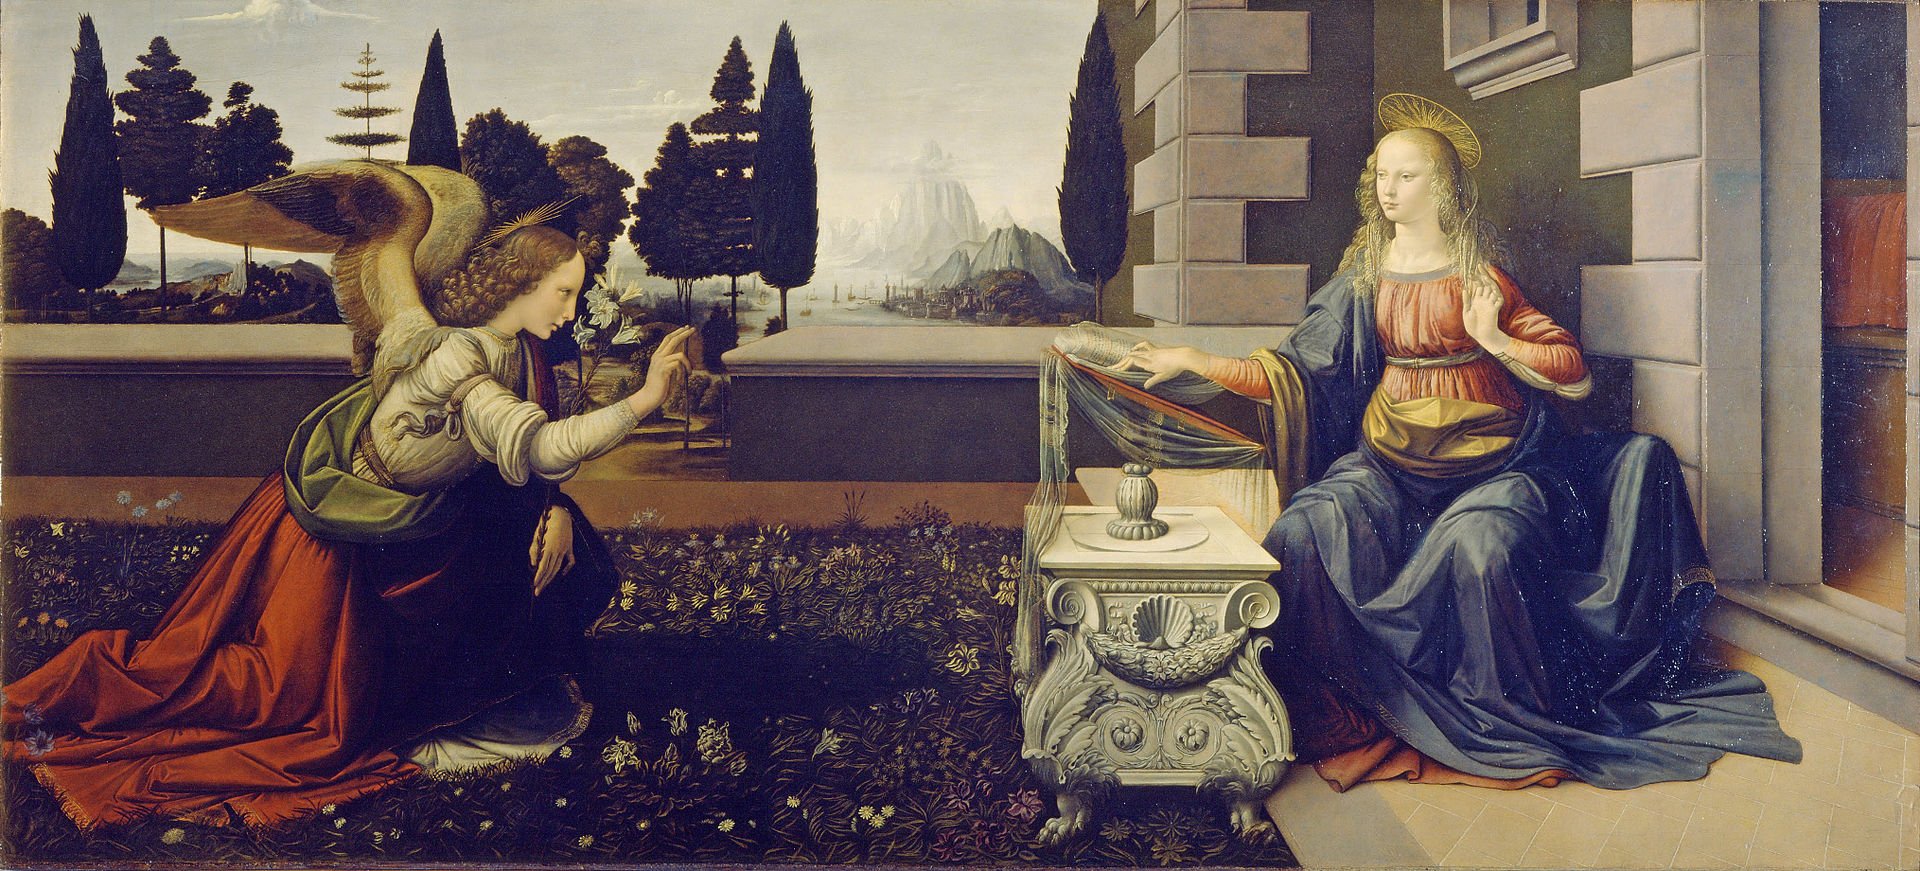 Благовещение, Леонардо да Винчи, 1472—1475, Уффици.Флоренция